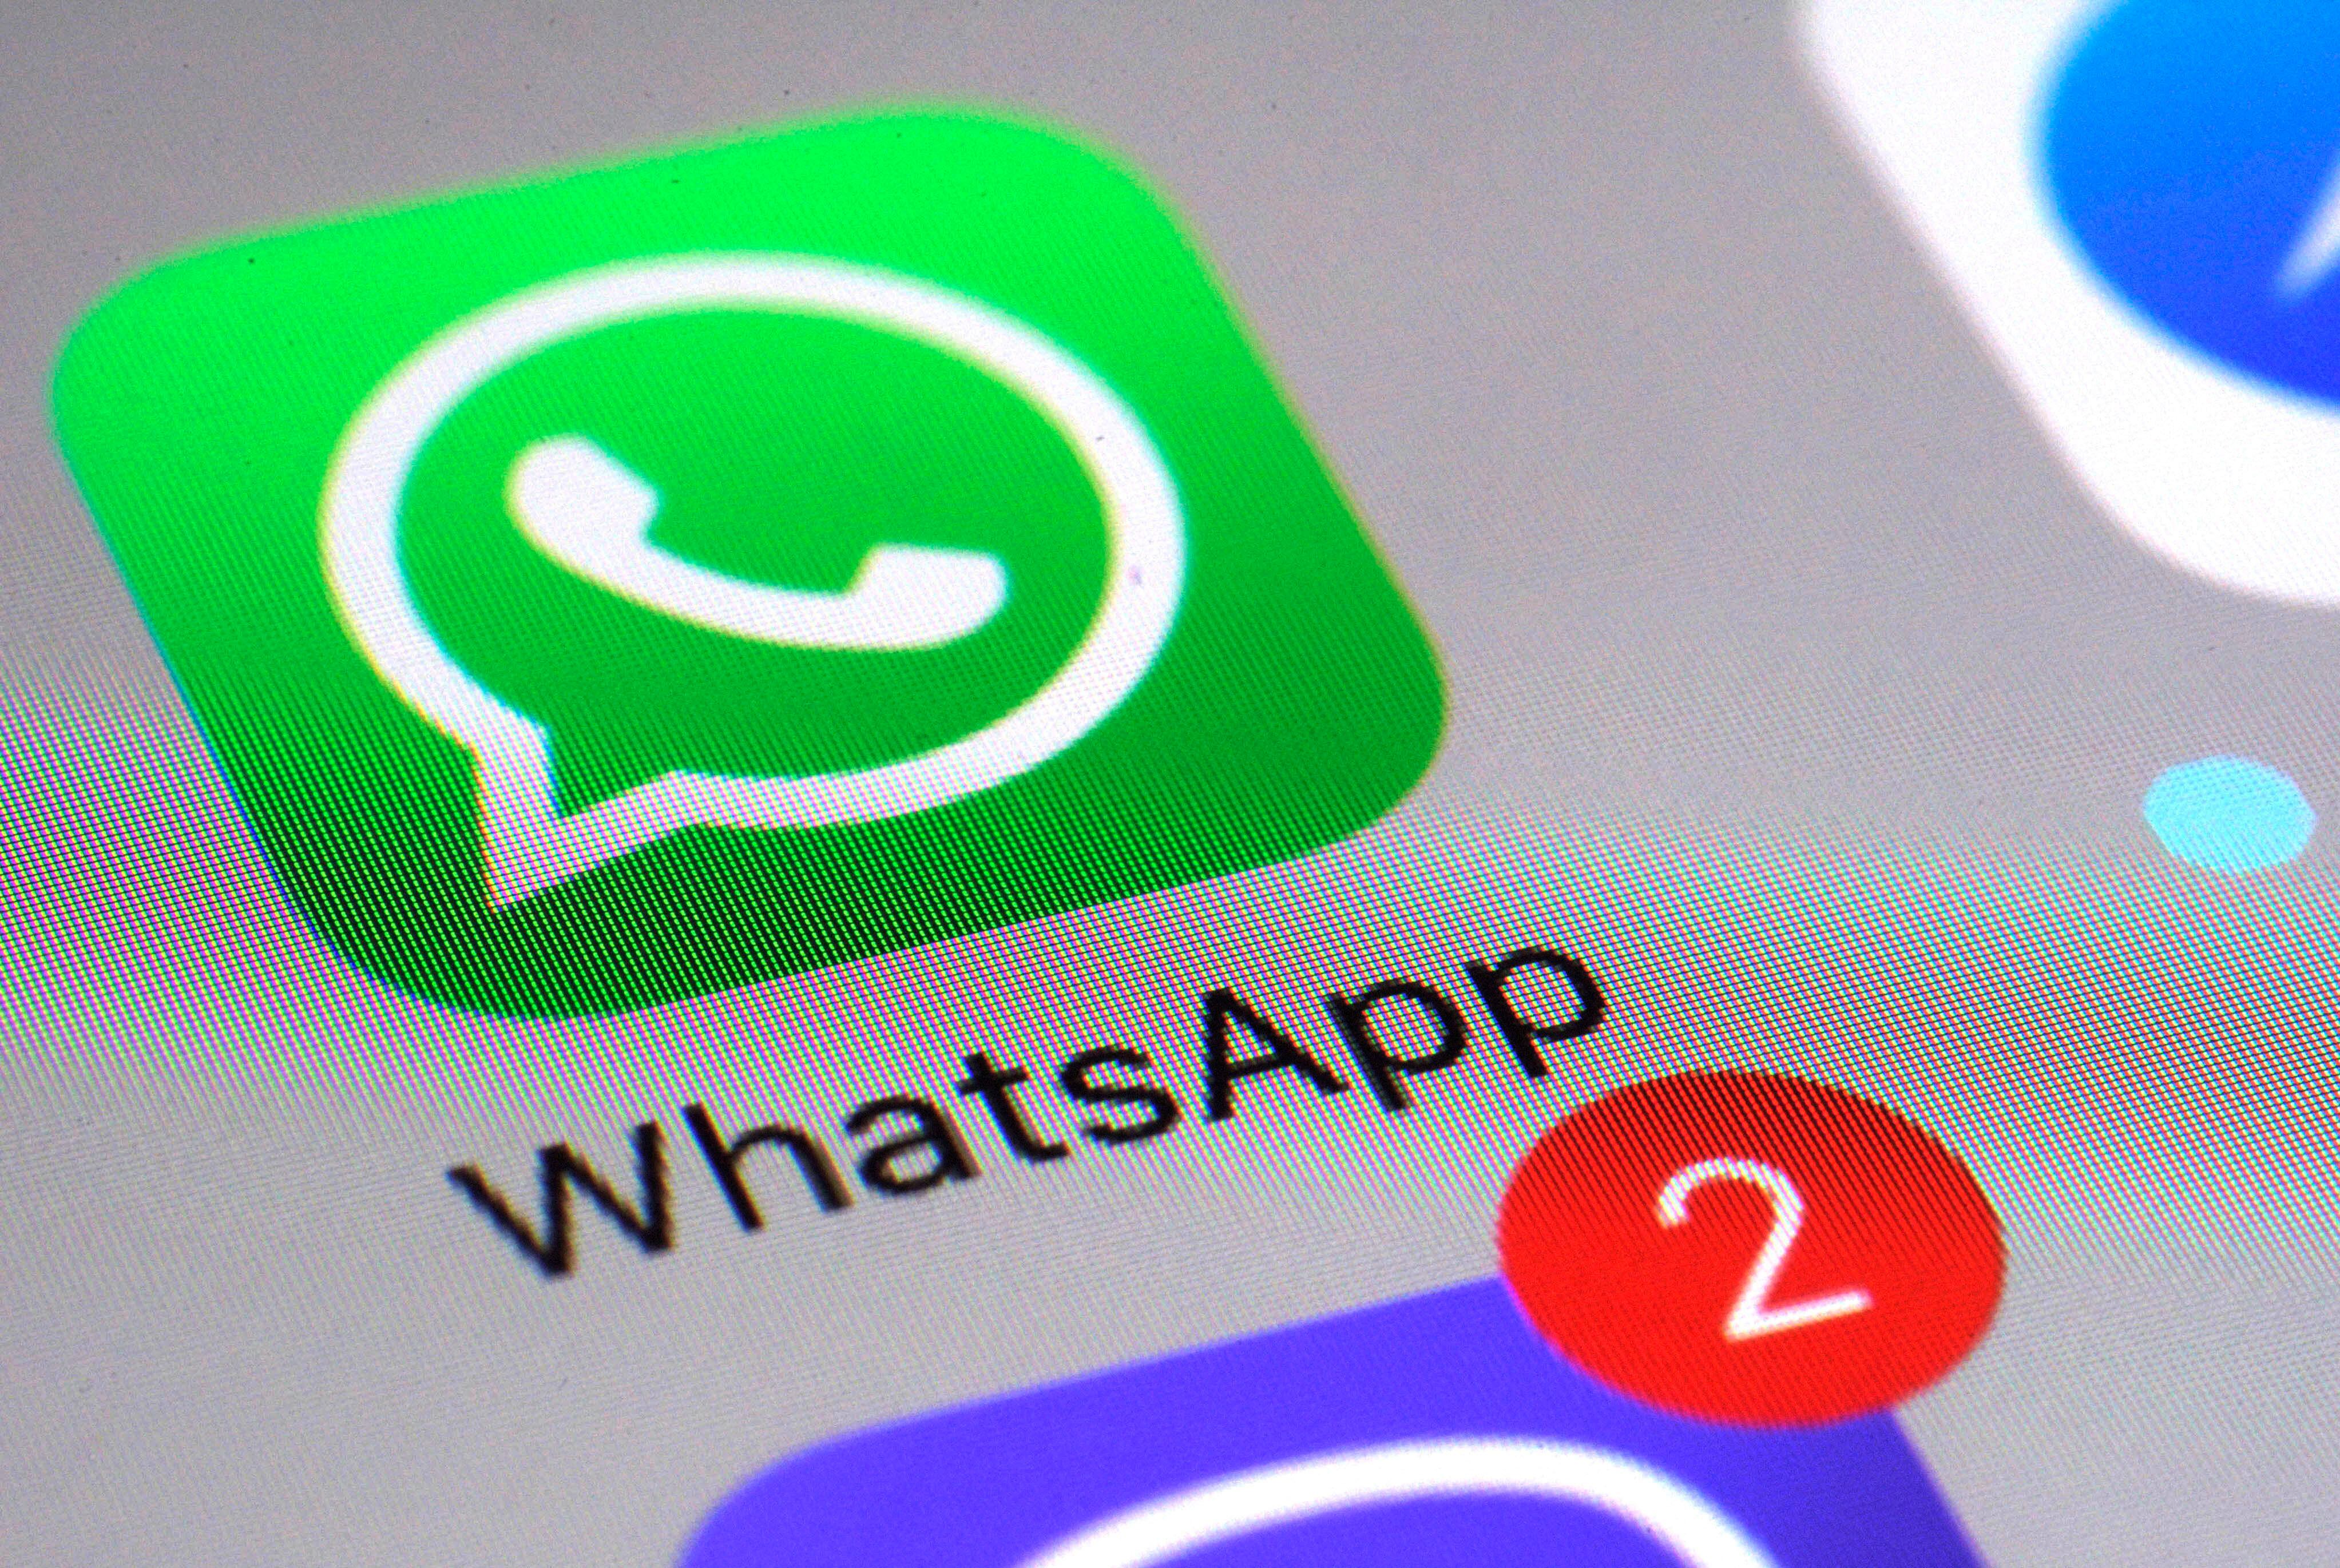  WhatsApp ayuda a que los usuarios encuentren los mensajes gracias a una
 filtro de fechas. (AP)